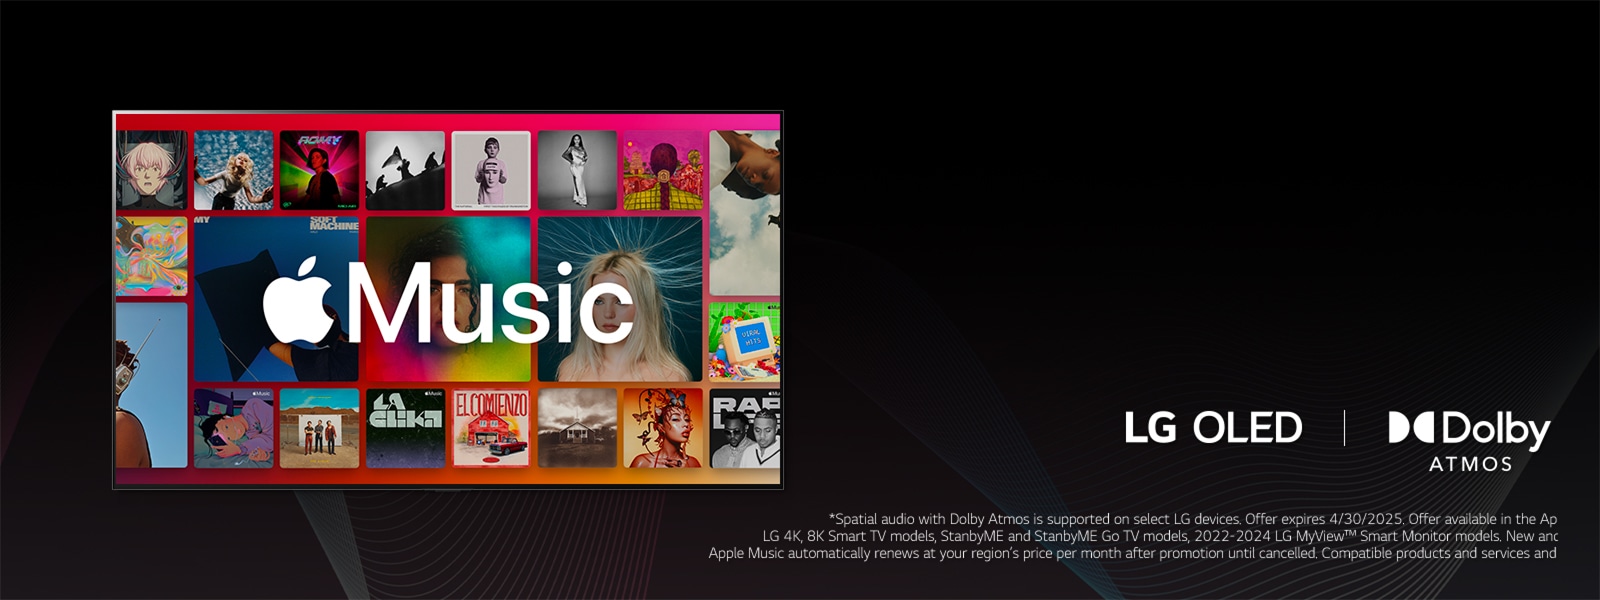 Verschillende albums met het Apple Music-logo eroverheen geprojecteerd en met het LG OLED- en Dolby Atmos-logo eronder.